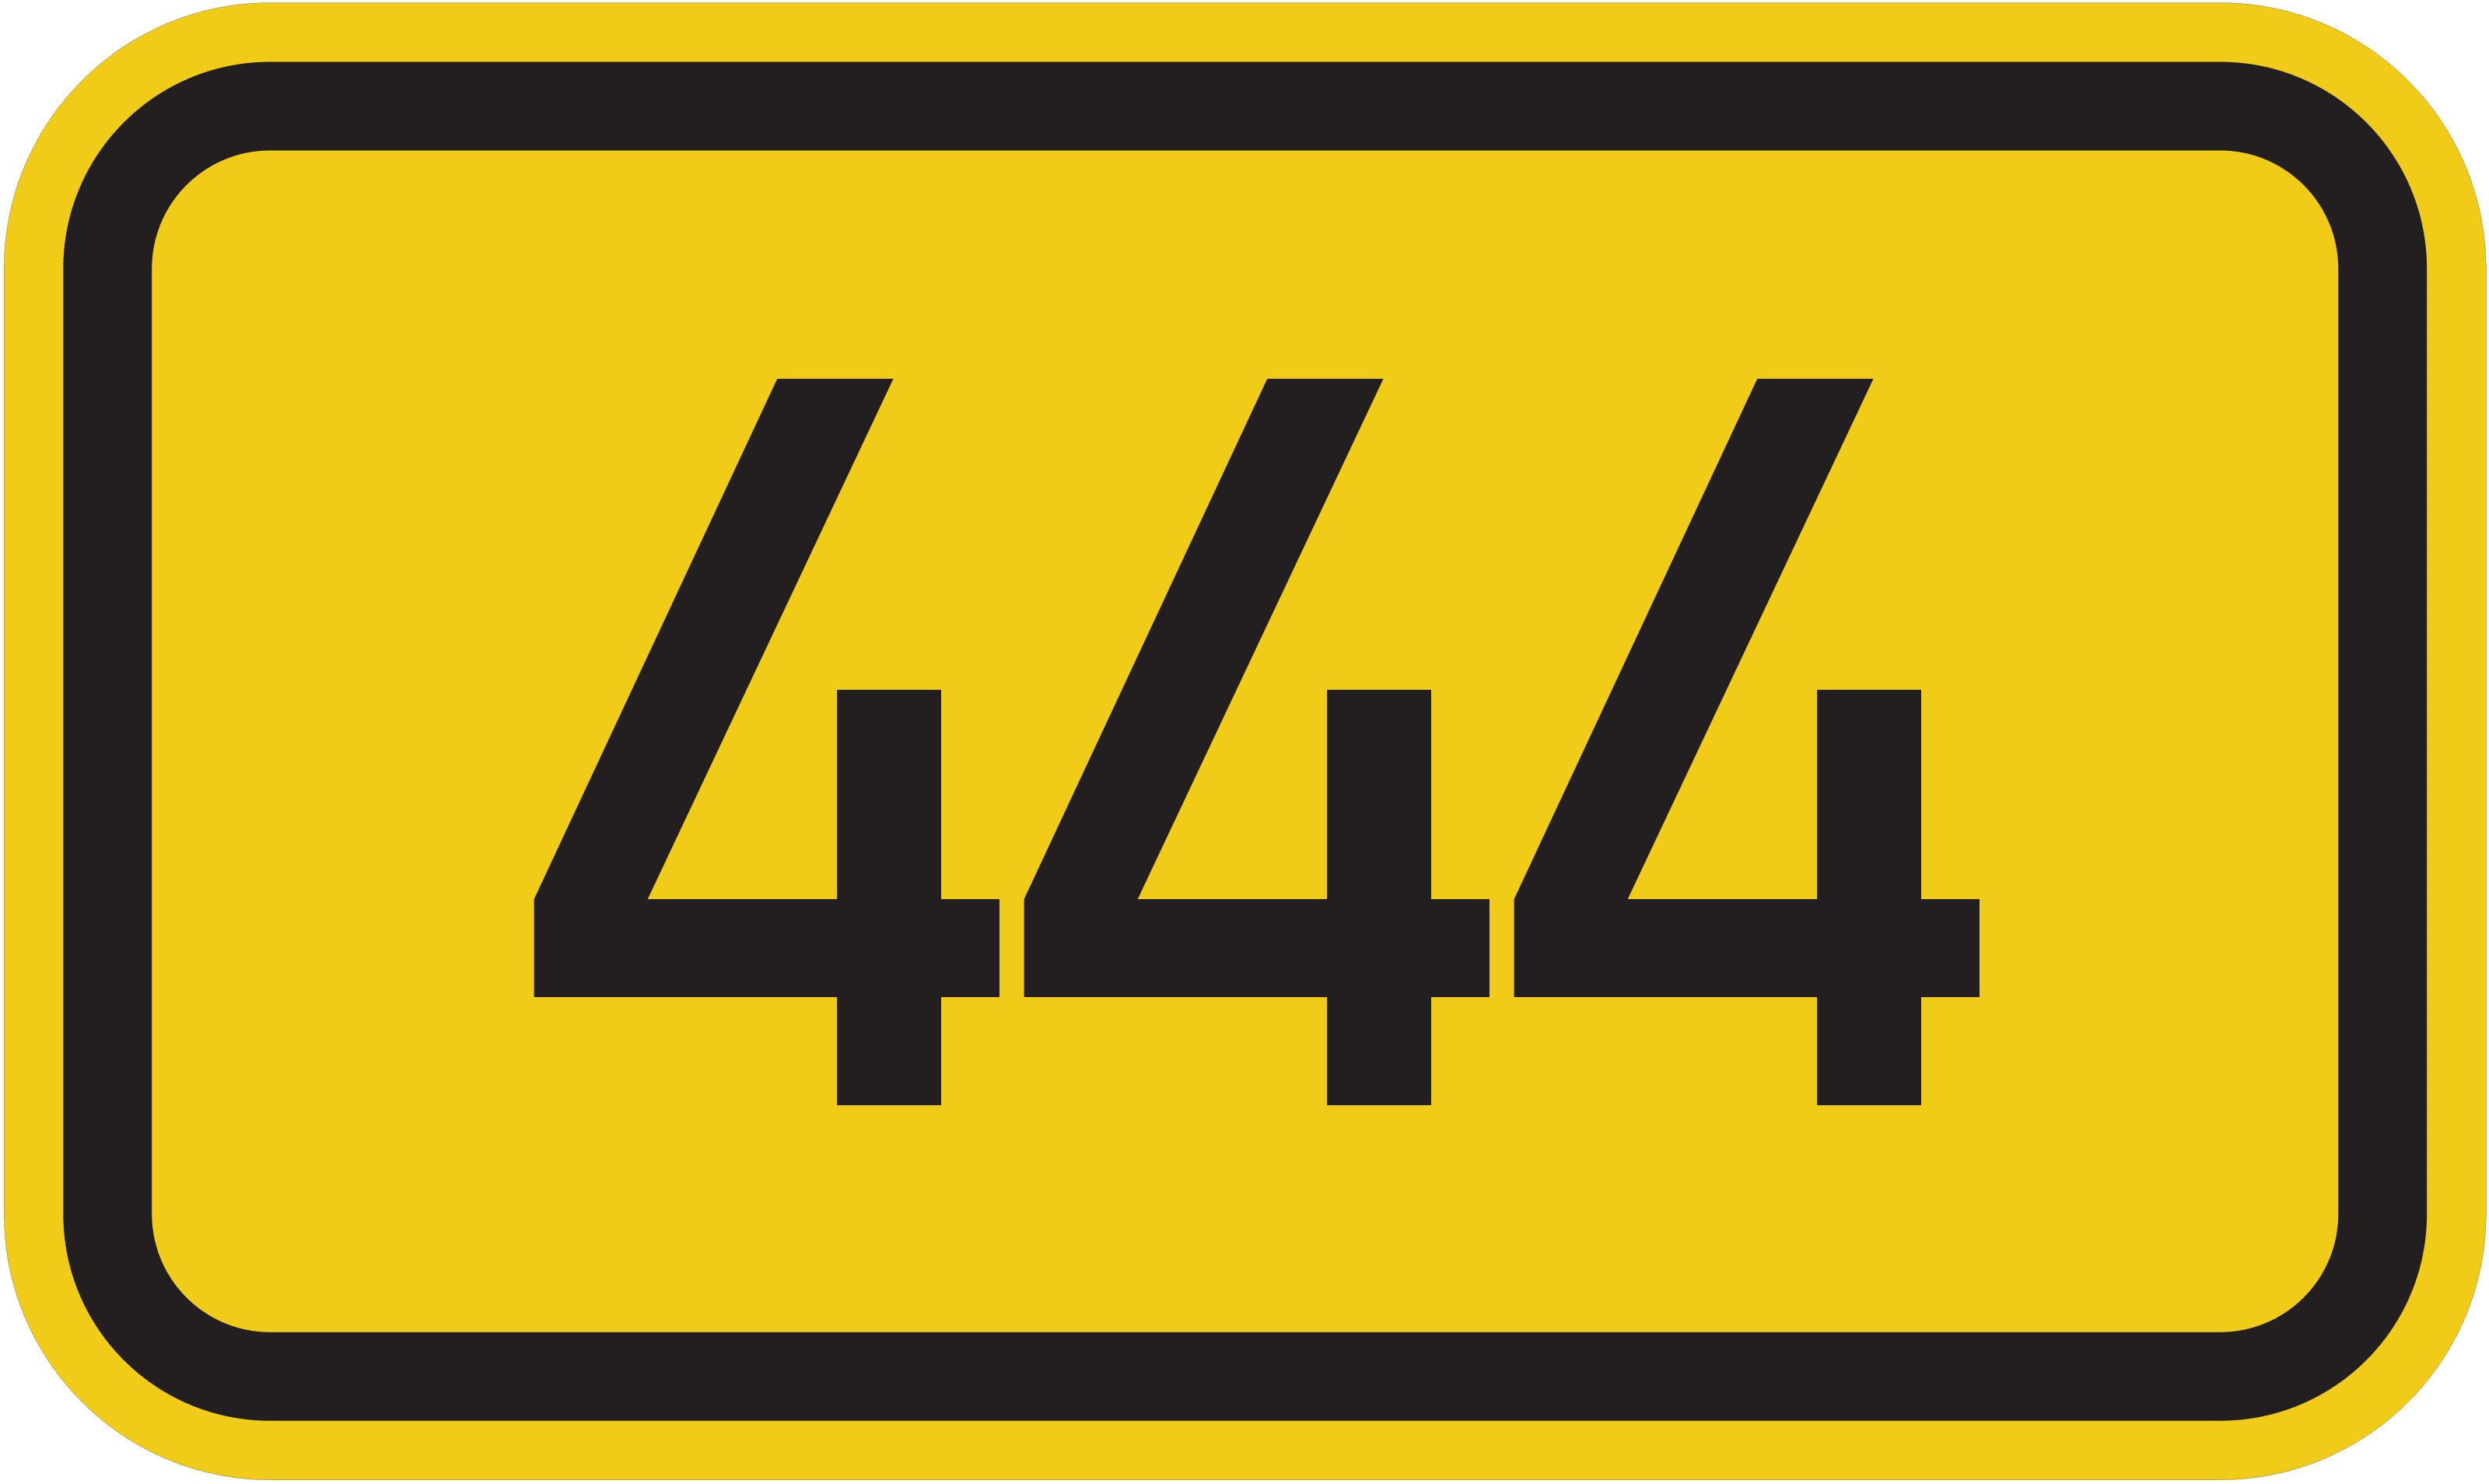 Bundesstraße 444